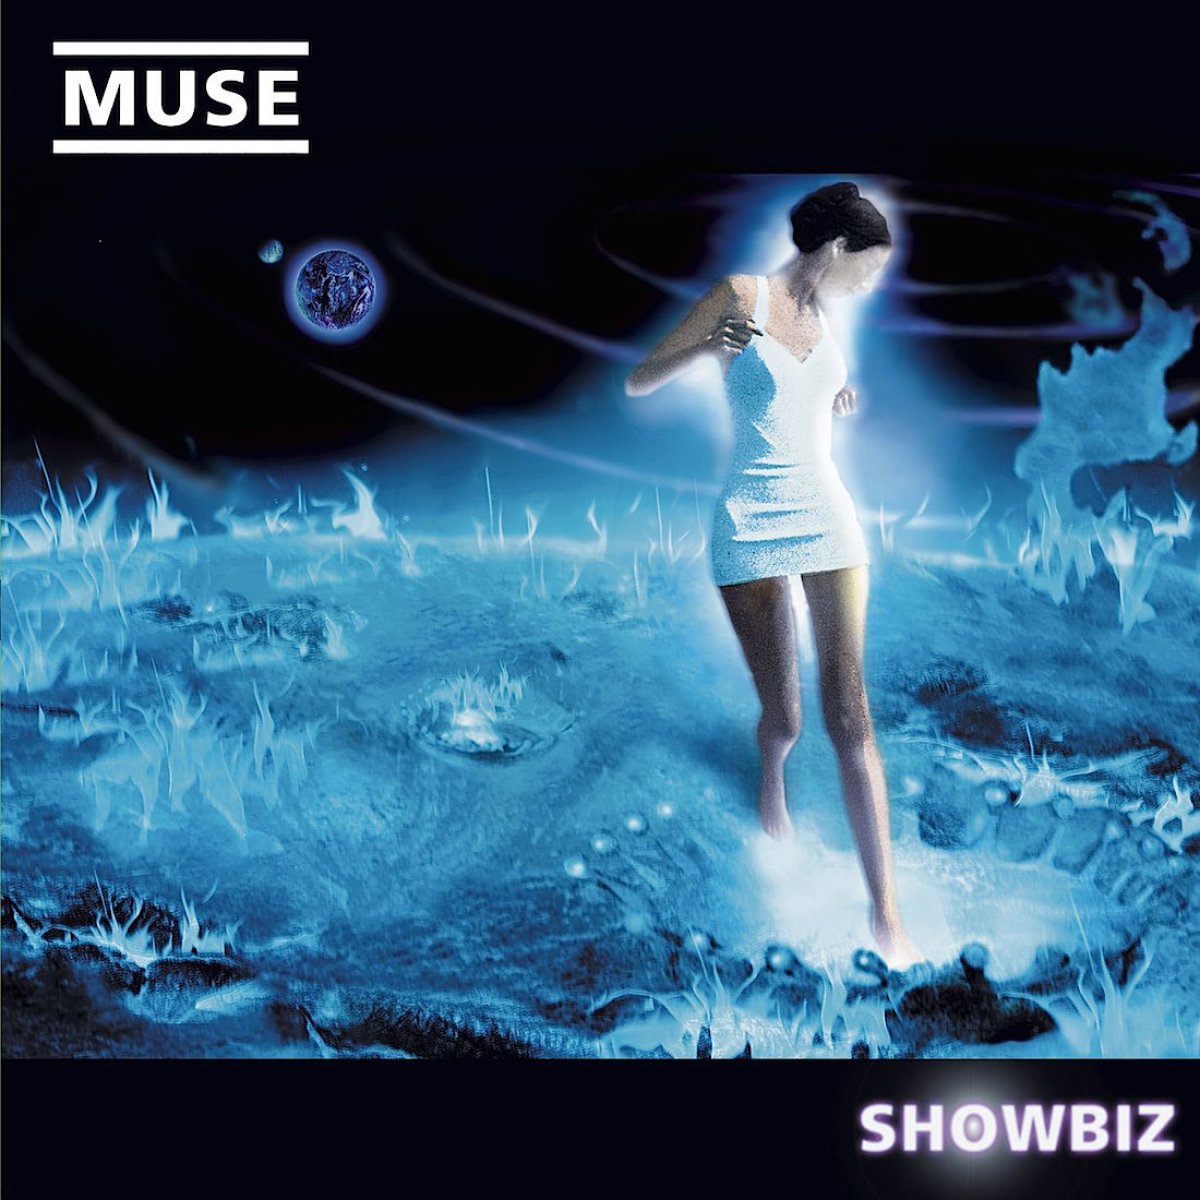 'Showbiz', Muse